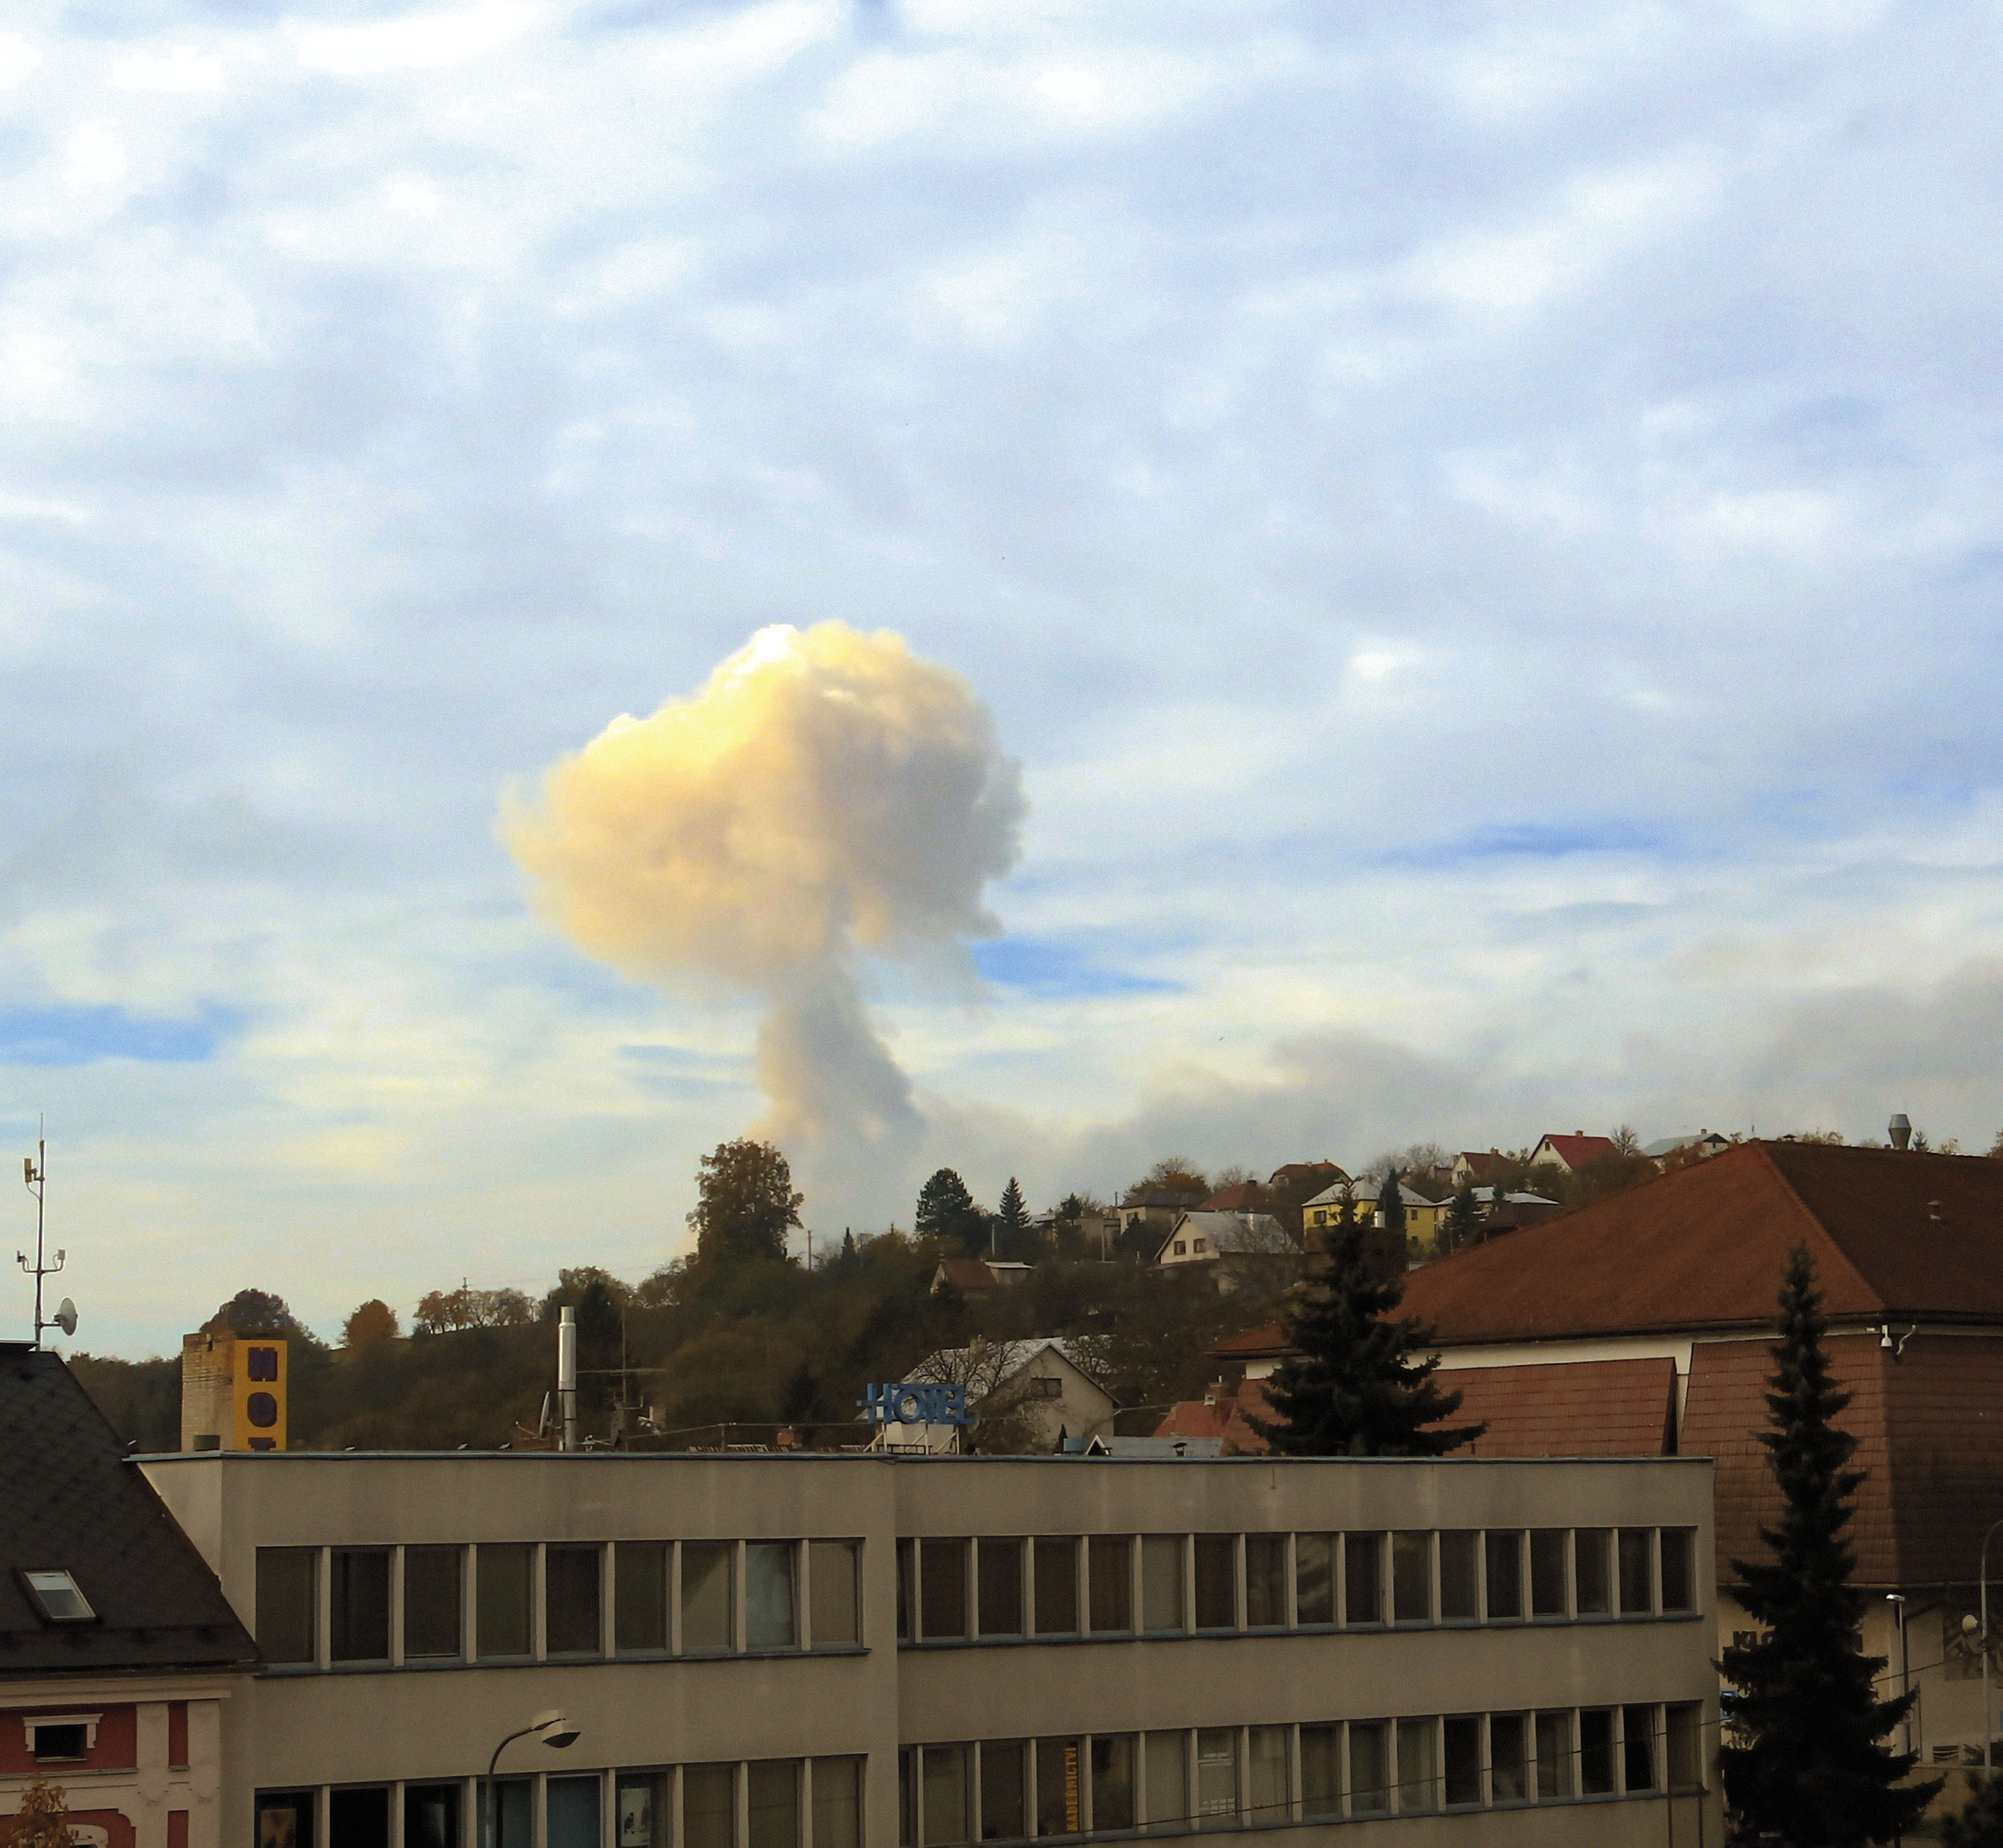 Snímek dýmu z exploze muničního skladu ve Vrběticích 16. října 2014. Letos česká vláda oznámila, že existuje „důvodné podezření“ podložené „jednoznačnými důkazy“, že za explozí stáli agenti ruské tajné služby.